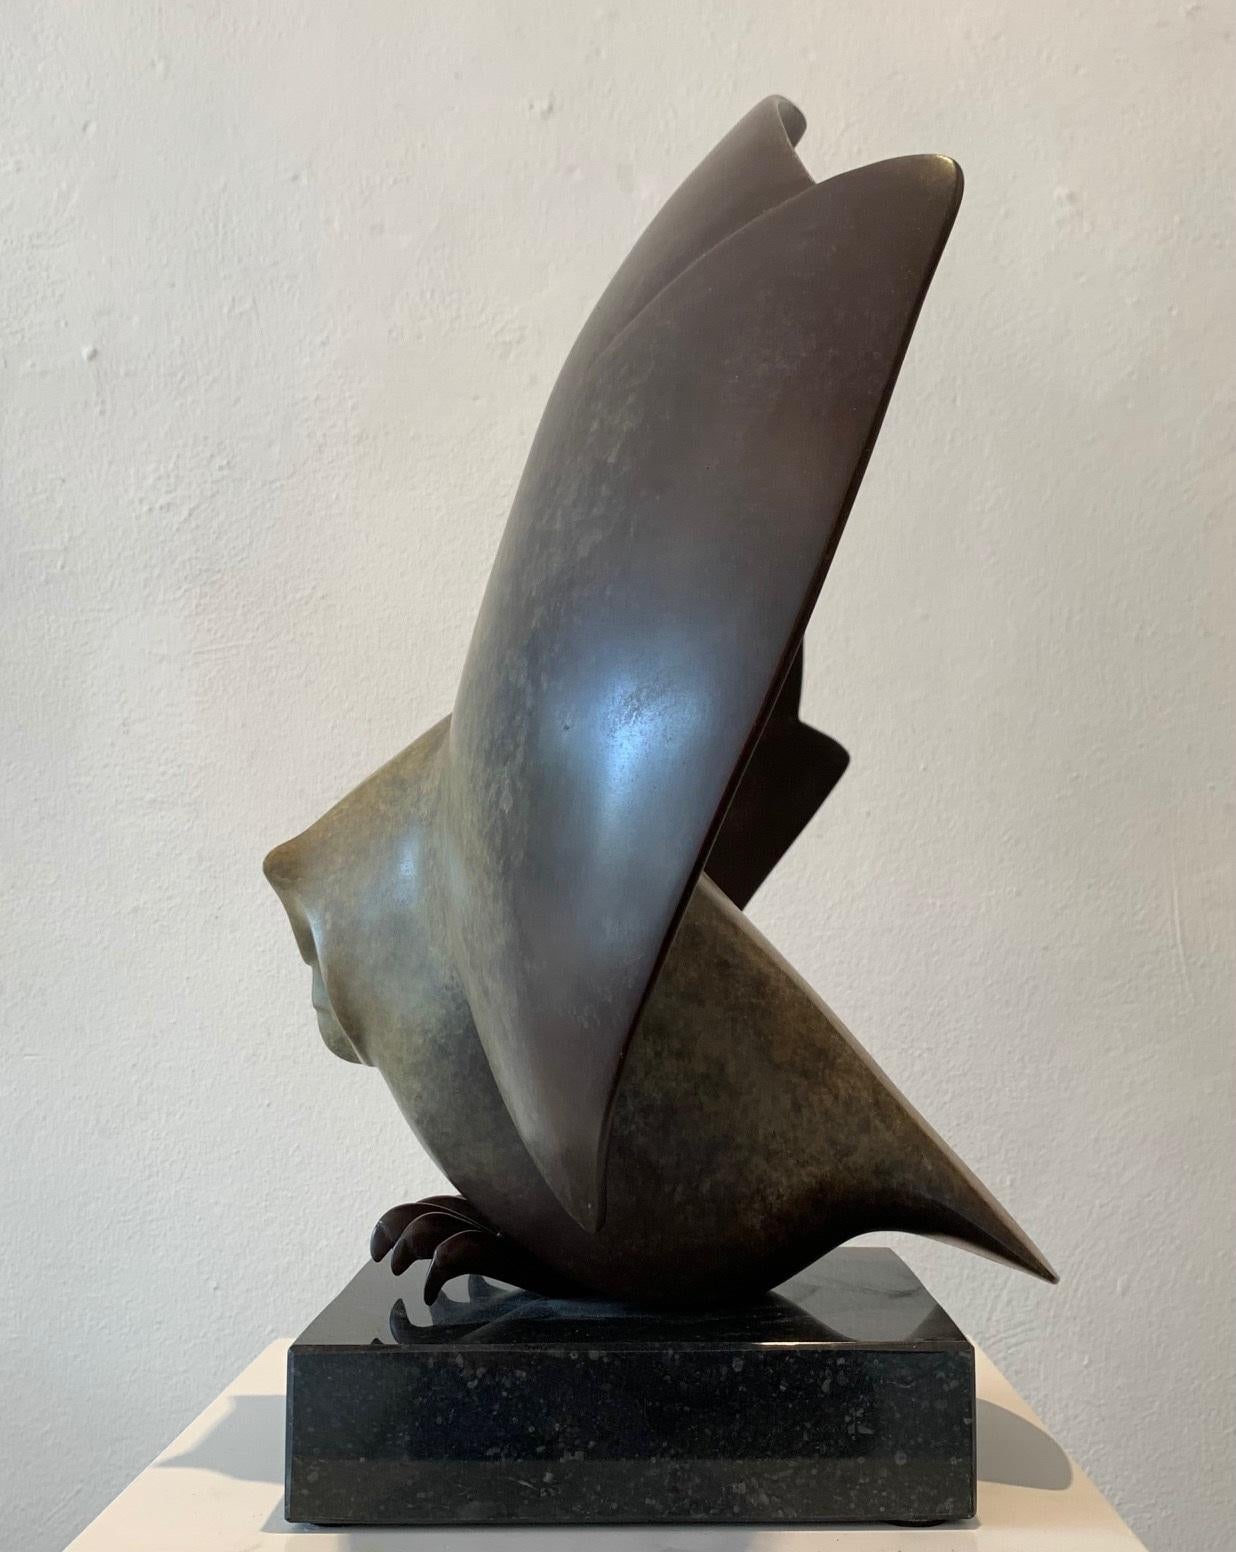 Landende Uil Nr. 3 Landende Eule Bronze-Skulptur Vogel Limitierte Auflage Sonderpatina
Evert den Hartog (geboren 1949 in Groot-Ammers, Niederlande) absolvierte eine Ausbildung zum Bildhauer an der Rotterdamer Akademie der Bildenden Künste. In den